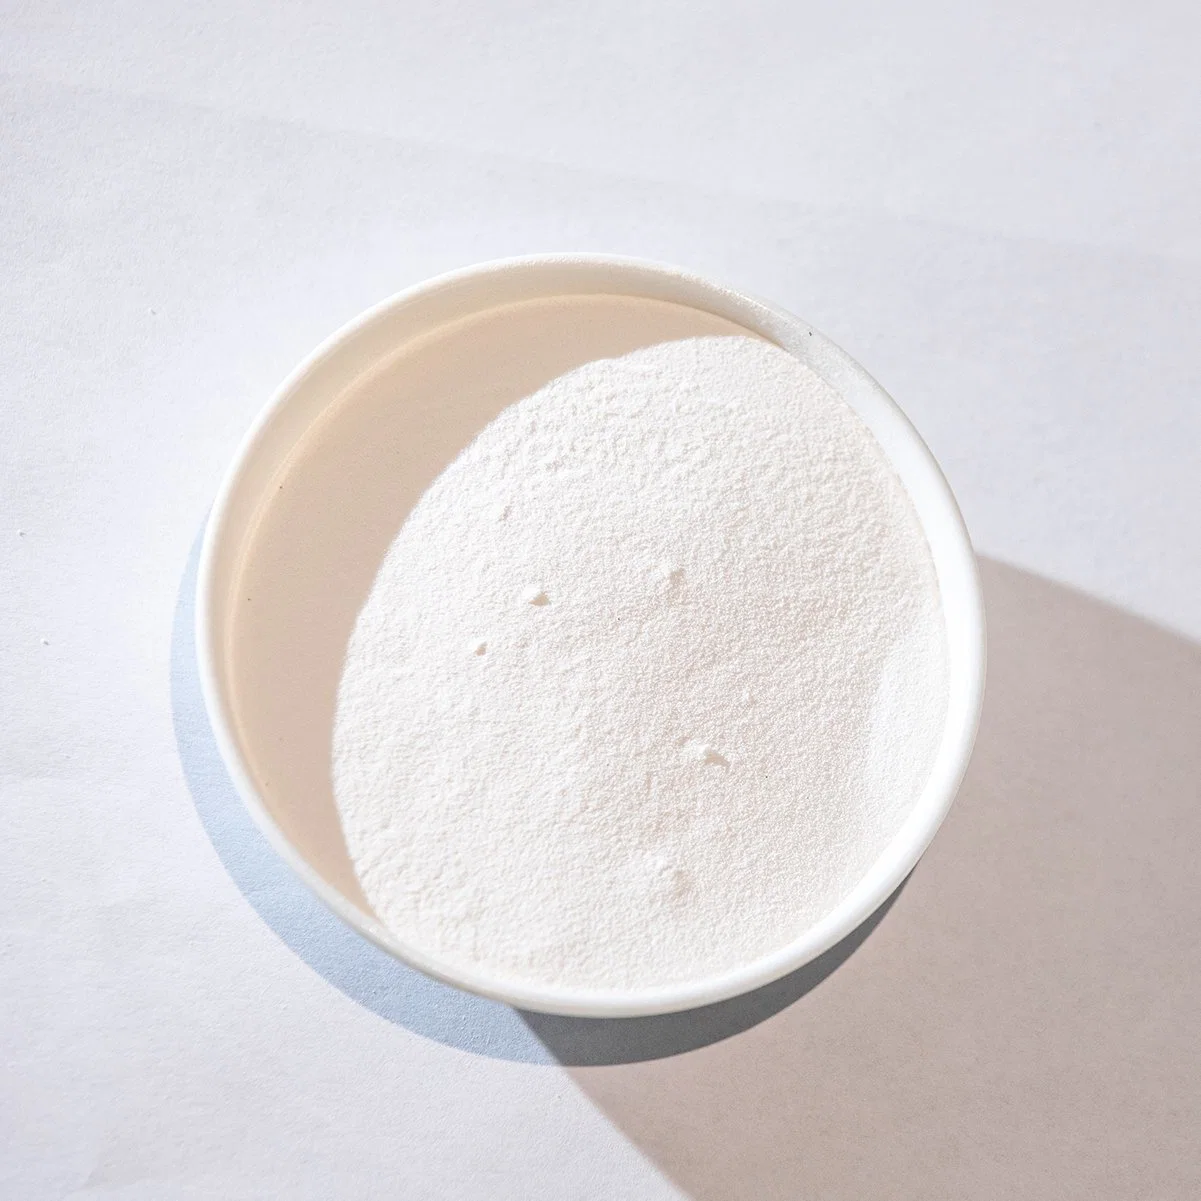 Seide Aminosäuren Weisses Pulver Kosmetik-Produkte Hautpflege Raw Material